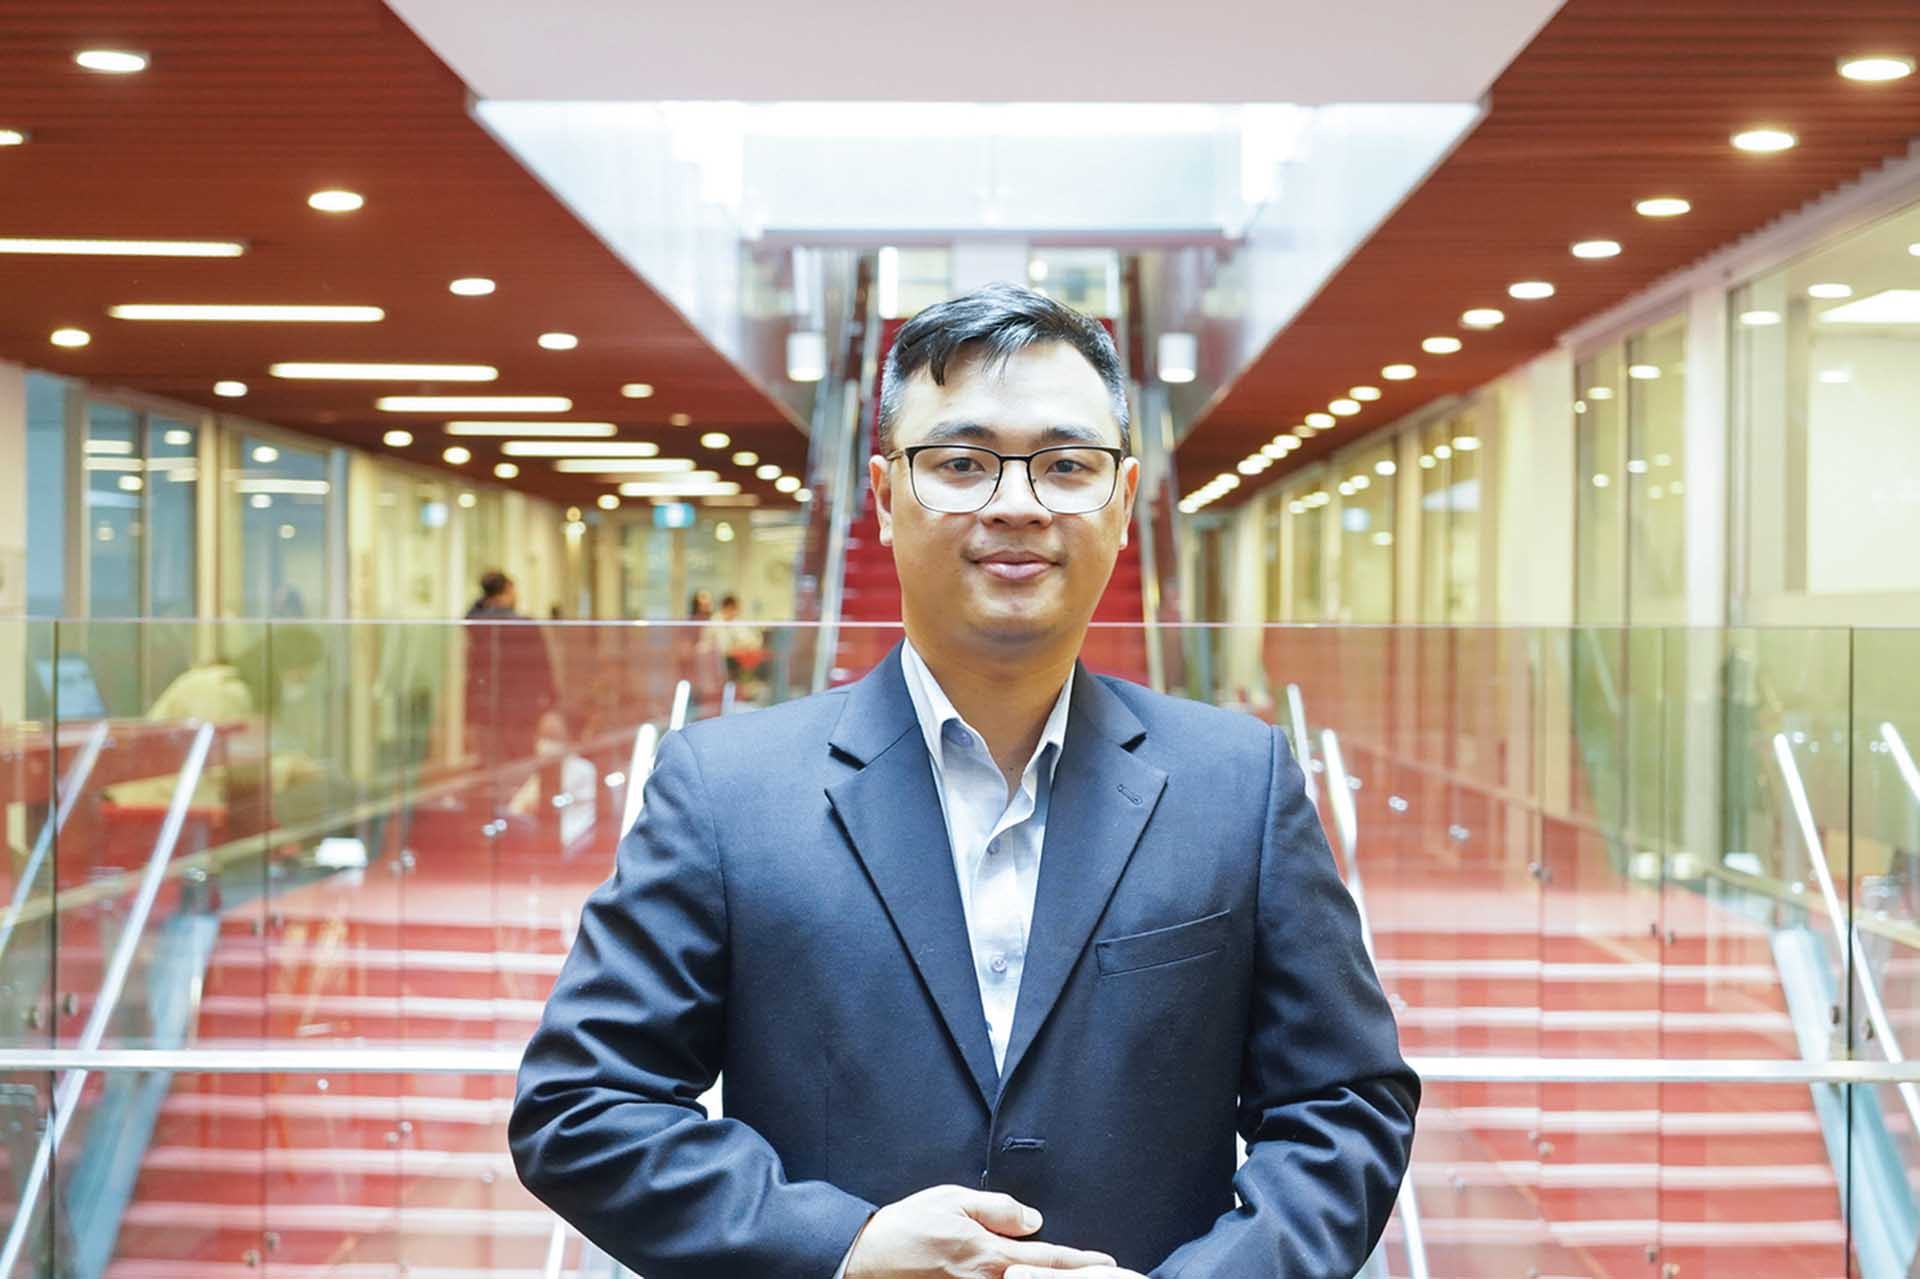 Tiến sĩ Phan Thanh Chung, Giảng viên kinh tế, Khoa Kinh doanh, Đại học RMIT Việt Nam.